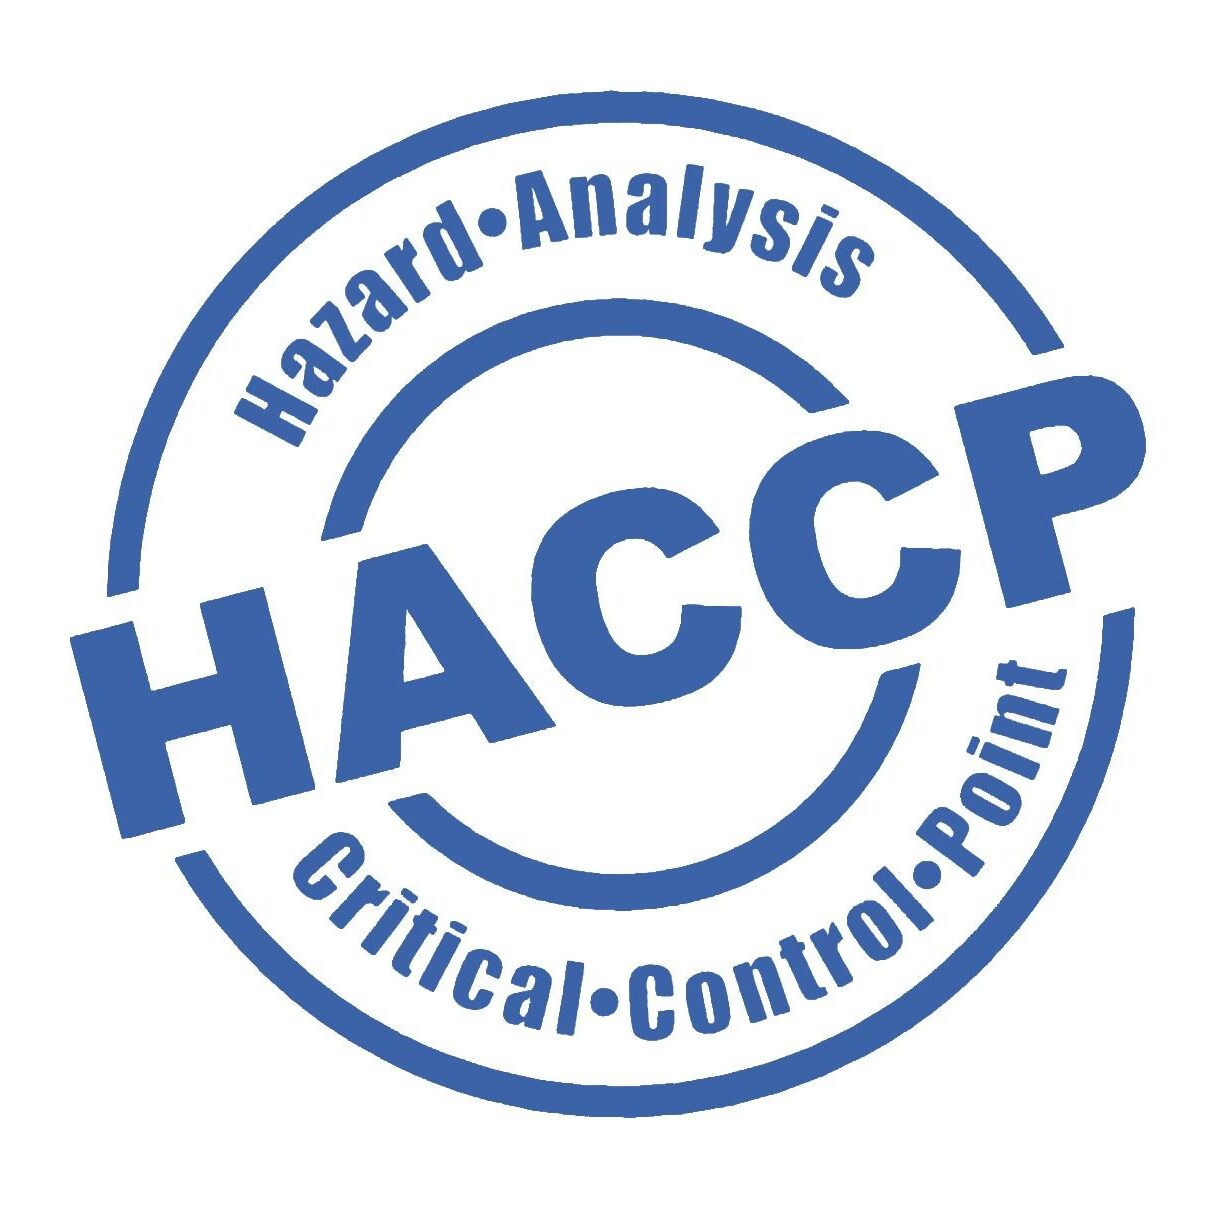 Simbolo del sistema HACCP fatto come un timbro